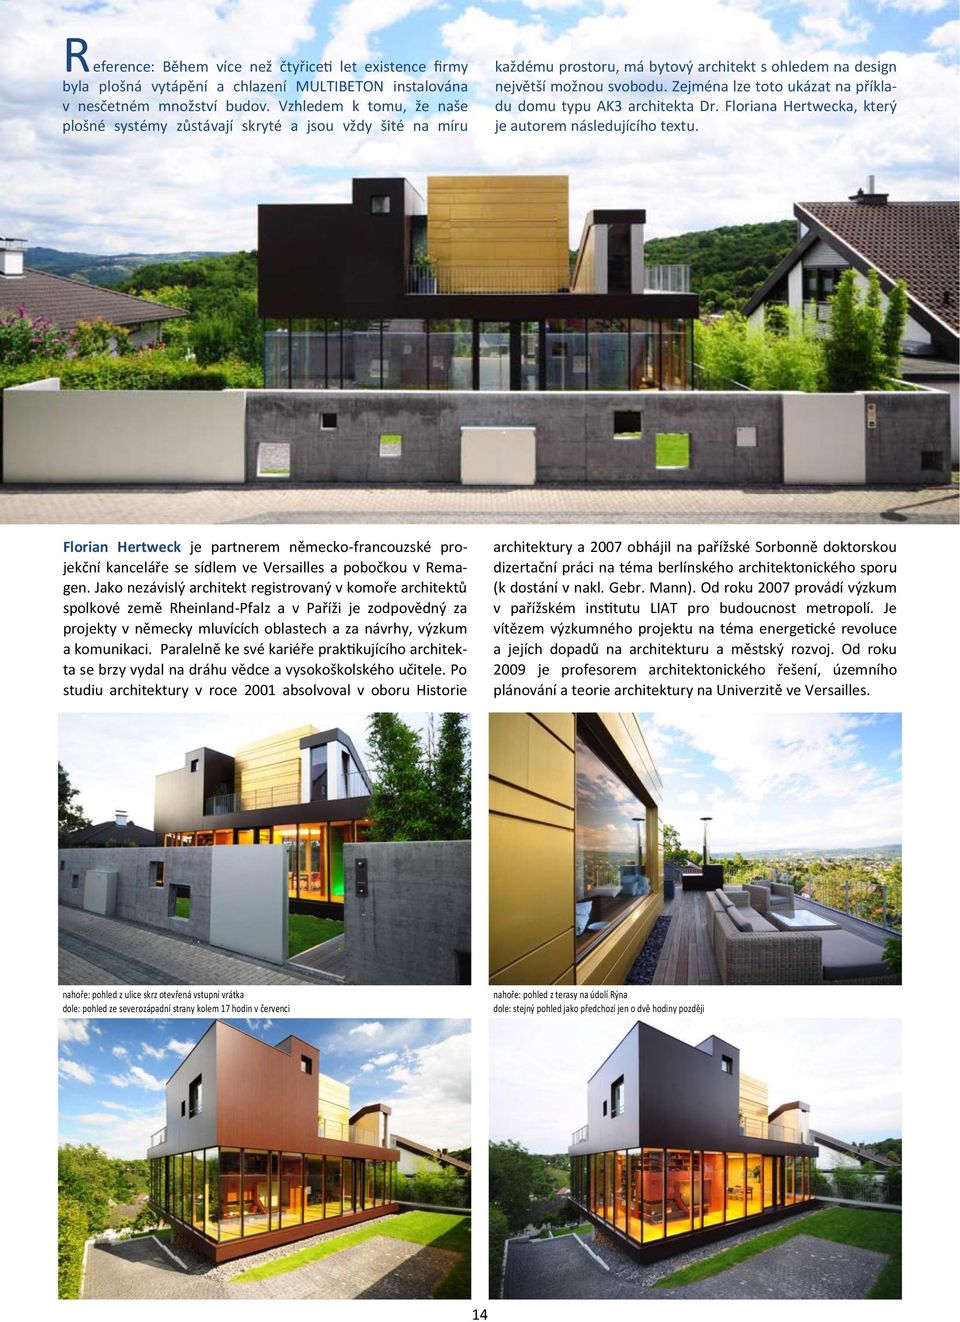 Zejména lze toto ukázat na příkladu domu typu AK3 architekta Dr. Floriana Hertwecka, který je autorem následujícího textu.